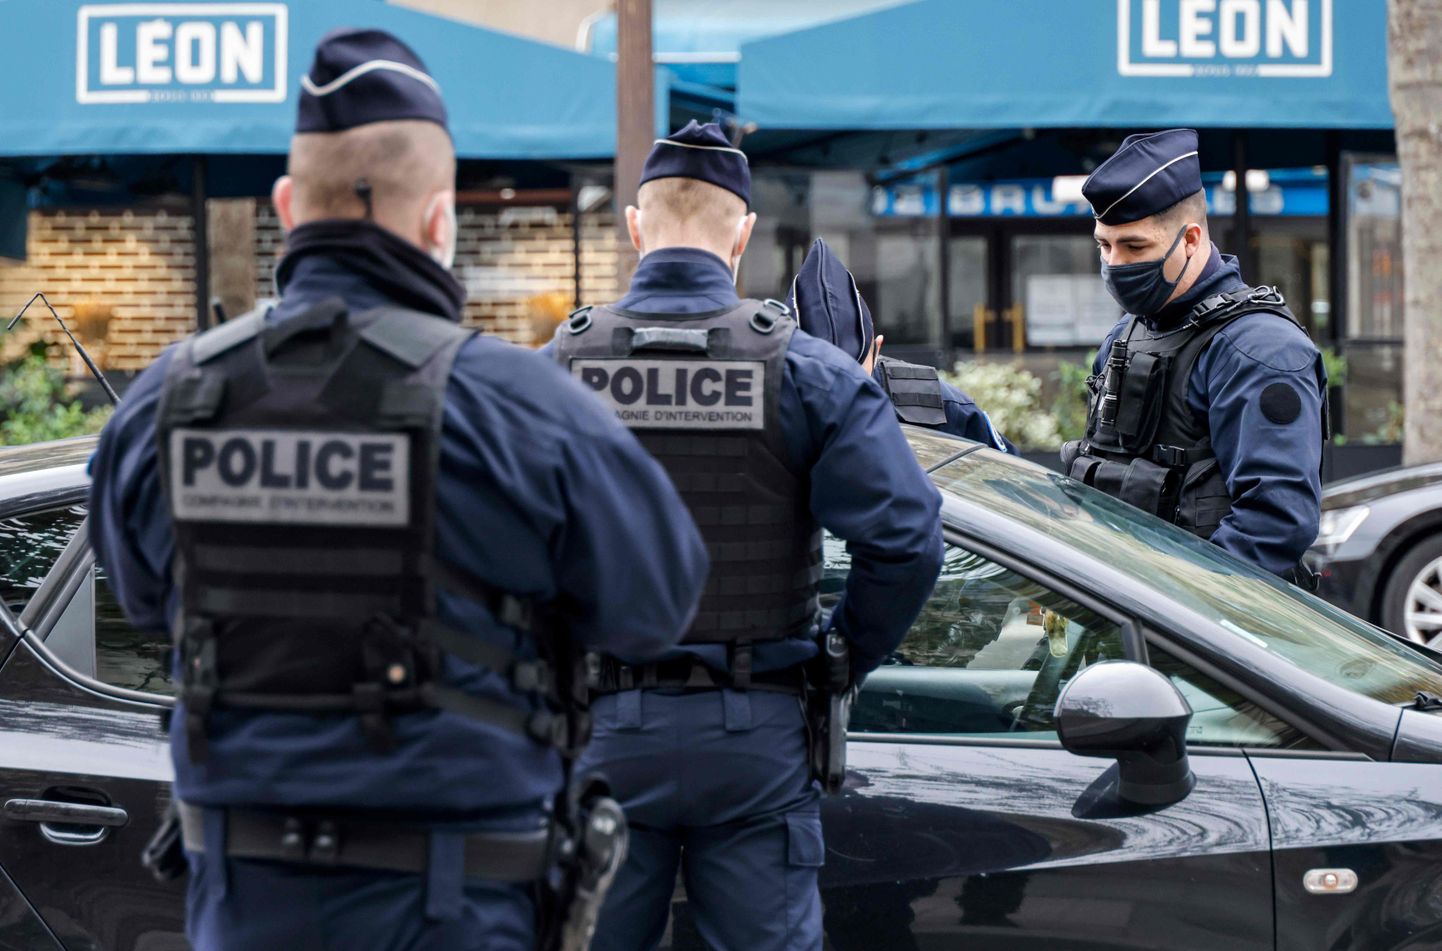 Prantsuse politsei. Foto on illustratiivne.